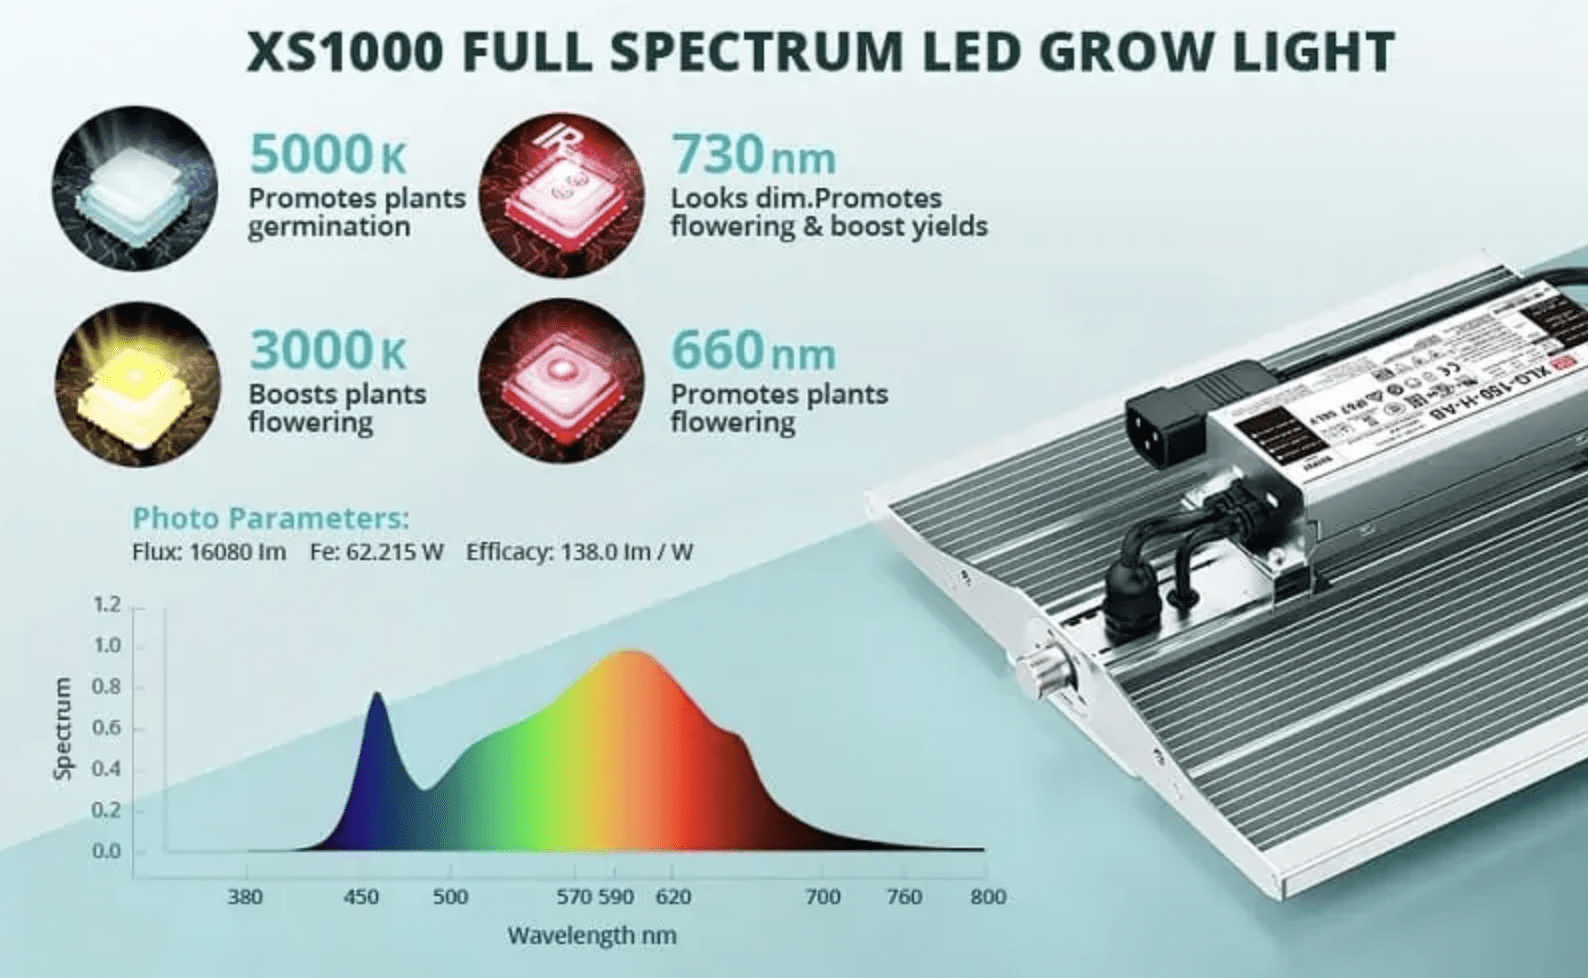 Viparspectra XS1000 Full Spectrum LED Grow Light